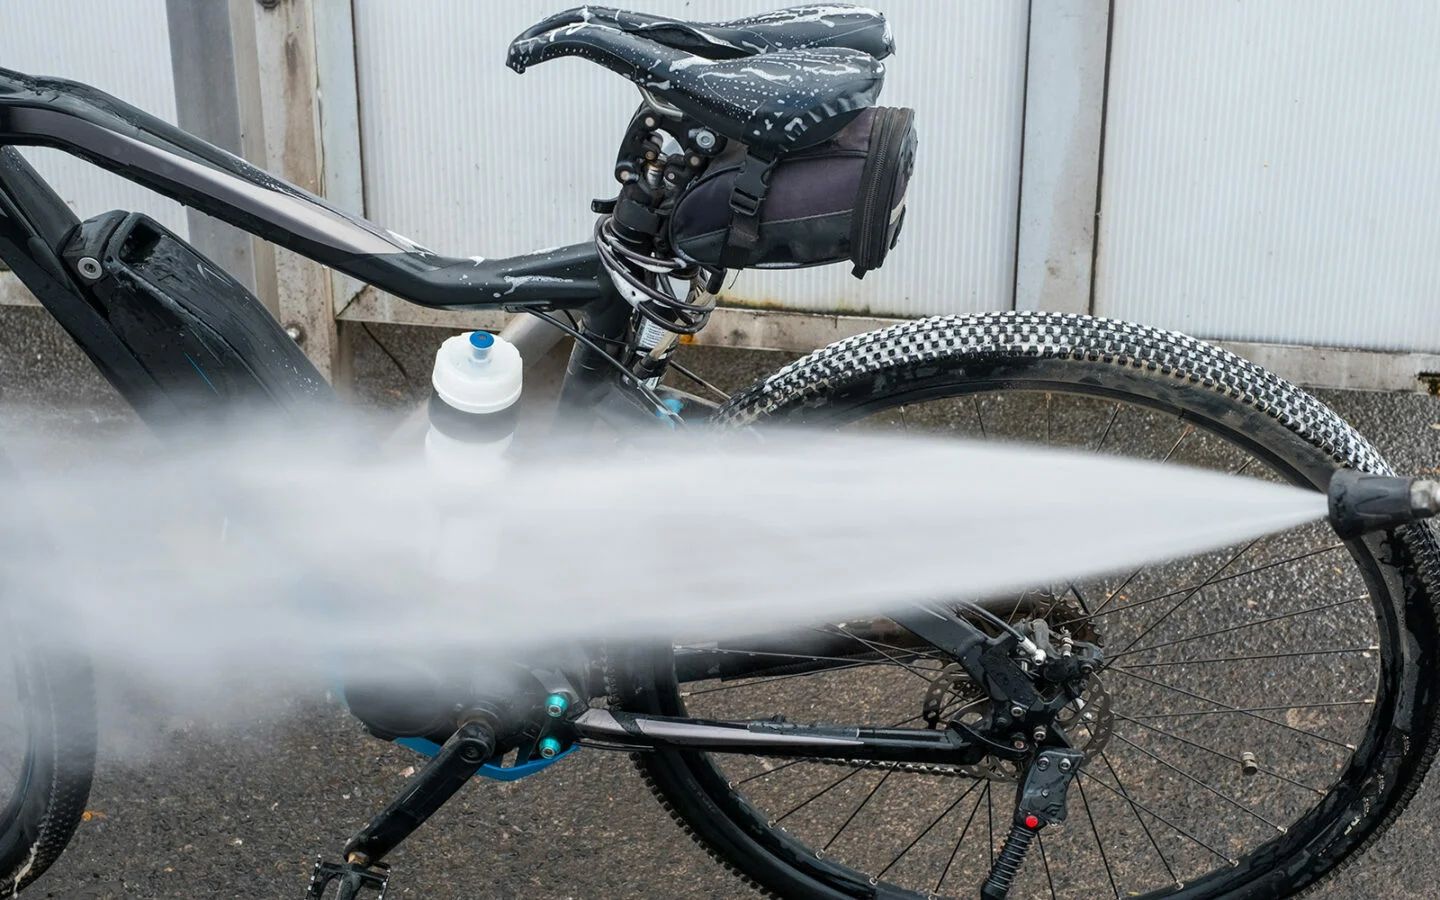 Est-il possible de nettoyer la chaîne de votre vélo sans eau